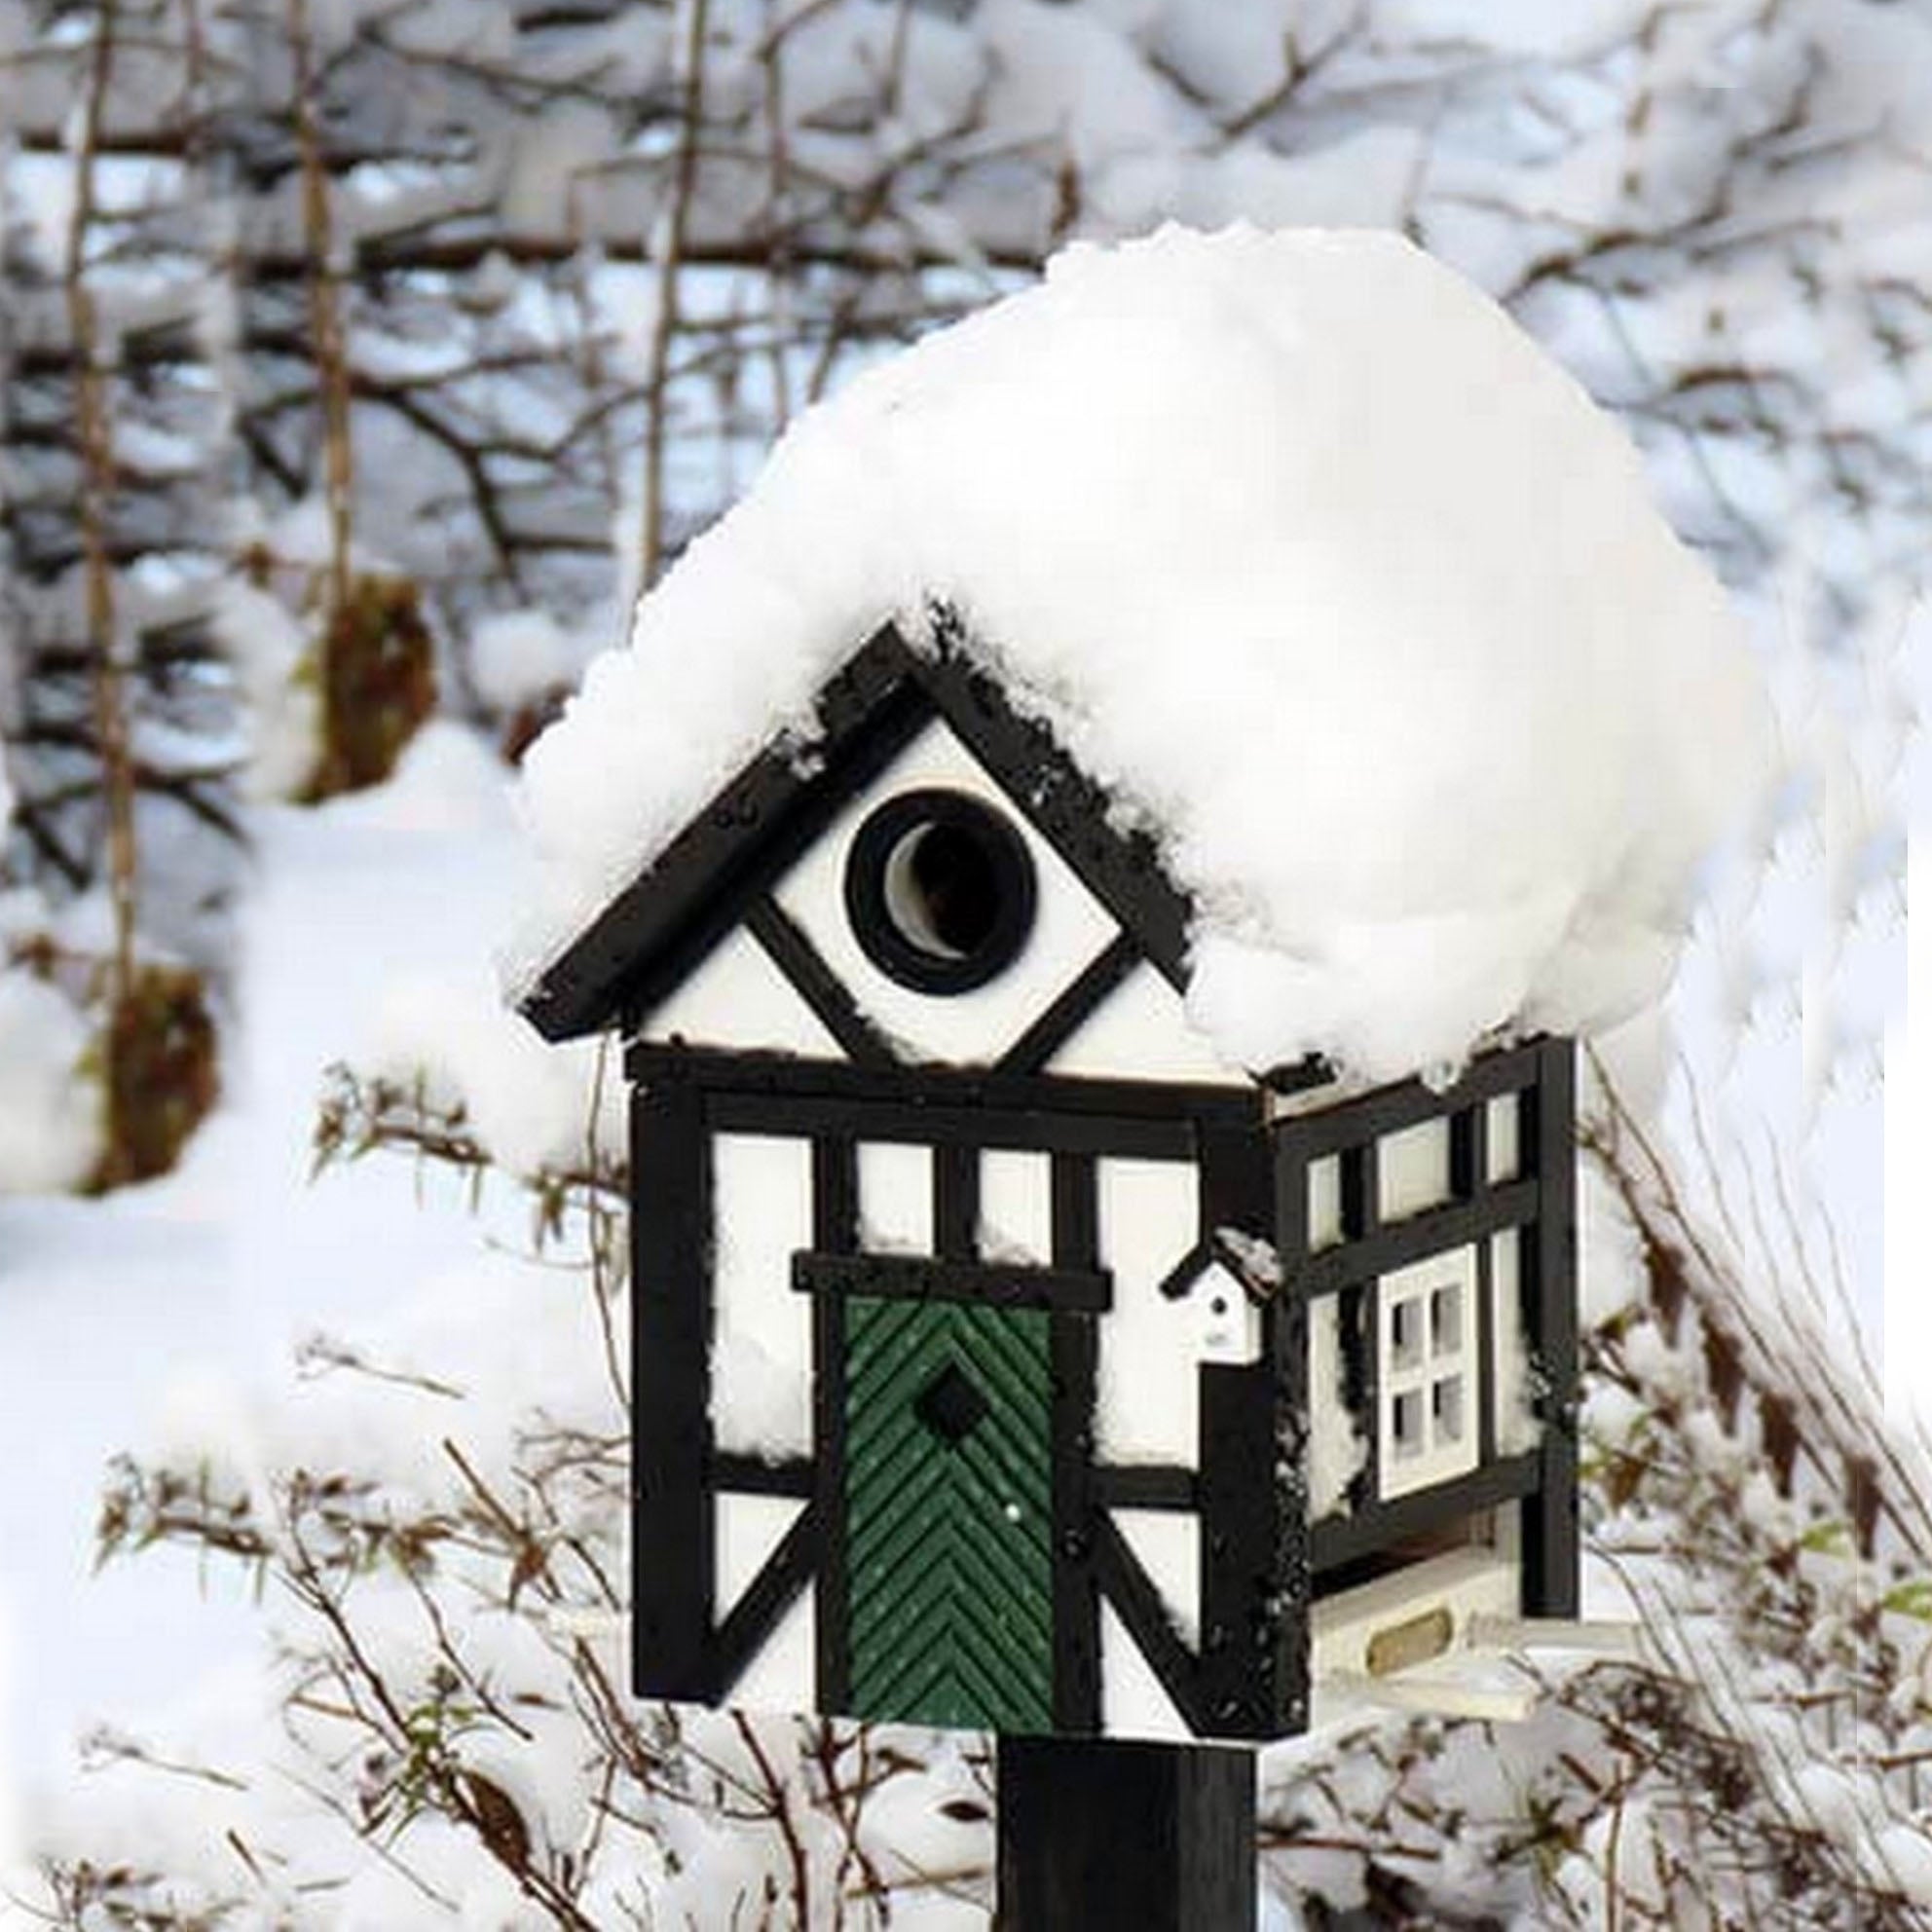 Design Voeder- en Vogelhuis Vakwerk│Multiholk Wildlife garden│foto in sneeuw